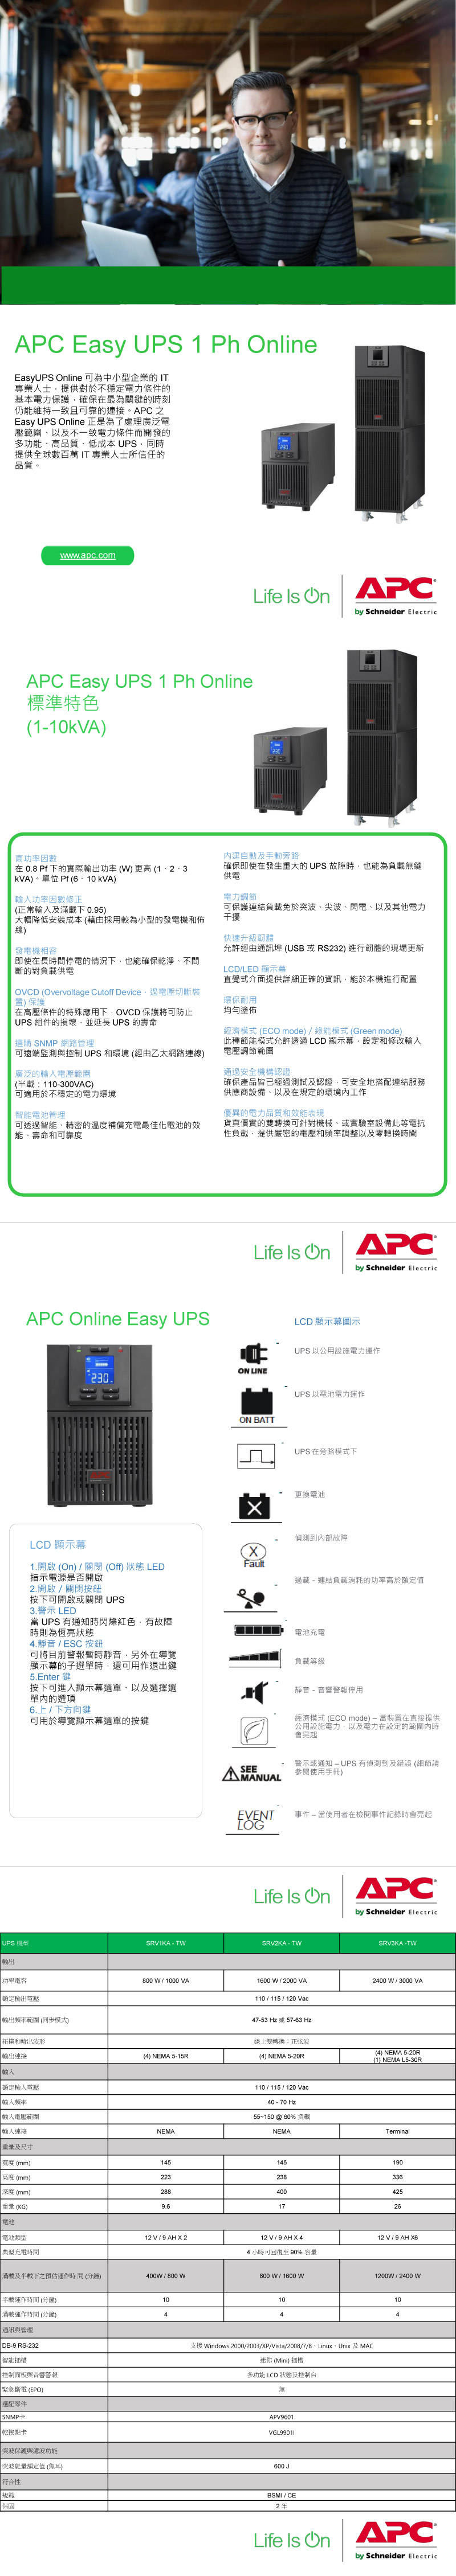 APC Easy UPS 1  lineEasyUPS line 可為中小型企業的IT專業人士提供對於不穩定電力條件的基本電力保護確保最為關鍵的時刻仍能維持一致且可靠的。APC之Easy UPS line 正是為了處理廣泛電壓範圍以及不一致電力條件而開發的多功能、高品質、低成本UPS,同時提供全球數百萬 IT 專業人士所信任的品質。wwwwapccomAPC Easy UPS 1 Ph line標準特色(1-10kVA)Life  APCby Schneider Electric230高功率因數內建自動及手動旁路在 0.8 Pf下的實際功率(W)更高(1、2、3kVA)。單位 Pf(6、10kVA)確保即使在發生重大的UPS 故障時,也能為縫供電功率因數修正(正常及下 0.95)大幅降低安成本(藉由採用較為小型的發電機和佈線)發電機相容即使在長時間停電的情況下,也能確保淨、不間斷的對負供電OVCD (Overvoltage Cutoff Device.電壓切斷裝置) 保護在高壓條件的特殊應用下,OVCD 保護將可防止UPS 組件的損壞,並延長 UPS 的壽命選購 SNMP 網路管理可遠端監測與控制UPS和環境(經由乙太網路連線)廣泛的電壓範圍(載110-300VAC)可適用於不穩定的電力環境智能管理可透過智能、精密的溫度補償充電最佳化電池的效能、壽命和可靠度APC Online Easy UPS230.電力調節可保護連結負載免於突波、尖波、閃電、以及其他電力干擾快速升級韌體允許經由通訊埠(USB或RS232)進行韌體的現場更新LCD/LED 顯示直覺式介面提供詳細正確的資訊,能於本機進行配置環保耐用均勻塗佈經濟模式 (ECO mode)/綠能模式(Green mode)此種節能模式允許透過LCD顯示,設定和修改電壓調節範圍通過安全機構認證確保產品皆已經過測試及認證,可安全地搭配連結服務供應商設備、以及在規定的環境內工作優異的電力品質和效能表現貨真價實的雙轉換可針對機械、或實驗室設備此等電抗性負載,提供嚴密的電壓和頻率調整以及零轉換時間Life  OnAPCby Schneider ElectricON LINELCD 顯示圖示UPS 以公用設施電力運作UPS 以電池電力運作ON BATTUPS 在旁路模式下更換電池偵測到內部故障LCD顯示幕1.開啟 (On) / 關閉 (Off) 狀態 LEDFault指示電源是否開啟過載-連結負載消耗的功率高於額定值2.開啟/關閉按鈕按下可開啟或關閉 UPS3.警示 LED UPS 有通知時閃爍紅色,有故障電池充電時則為恆亮狀態4.靜音/ESC 按鈕可將目前警報暫時靜音,另外在導覽顯示幕的子選單時,還可用作退出鍵5.Enter 鍵按下可進入顯示幕選單、以及選擇選單內的選項6.上/下方向鍵可用於導覽顯示幕選單的按鍵負載等級靜音 - 音響警報停用經濟模式 (ECO mode)-當裝置在直接提供公用設施電力,以及電力在設定的範圍內時會亮起SEE警示或通知-UPS 有偵測到及錯誤 (細節請參閱使用手冊)EVENT 事件-當使用者在檢閱事件記錄時會亮起LOGLife  OnAPCby Schneider ElectricUPS 機型SRV1KA - TWSRV2KA - TWSRV3KA-TW輸出功率電容800W/1000 VA額定輸出電壓1600W/2000 VA110 / 115 / 120 Vac2400W/3000 VA輸出頻率範圍(同步模式)47-53 Hz 或 57-63 Hz拓撲和出波形輸出連接(4) NEMA 5-20R線上雙轉換:正弦波(4) NEMA 5-15R(4) NEMA 5-20R(1) NEMA L5-30R額定輸入電壓輸入頻率110/115/120 Vac40 - 70 Hz55~150  60% 負輸入電壓範圍輸入連接NEMANEMATerminal重量及尺寸寬度(mm)145145190高度(mm)223238336深度(mm)288400425重量(KG)1726電池12V / 9 AHX212V/9 AHX412 V / 9 AH X64小時可回復至90% 容量電池類型典型充電時間滿載及半載下之預估運作時間(分鐘)400W/800W 半載運作時間(分鐘)滿載運作時間(分鐘)通訊與管理 DB-9 RS-232智能插槽控制面板與音響警報緊急斷電(EPO)選配零件SNMP|乾接點卡突波保護與濾波功能突波能量額定值 (焦耳)|符合性規範保固104800W/1600W104支援 Windows 2000/2003/XP/Vista/2008/7/8、Linux、Unix 及MAC迷你 (Mini) 插槽多功能 LCD 狀態及控制台無APV9601VGL99011600 JBSMI / CE2年1200W/2400w104Life  OnAPCby Schneider Electric